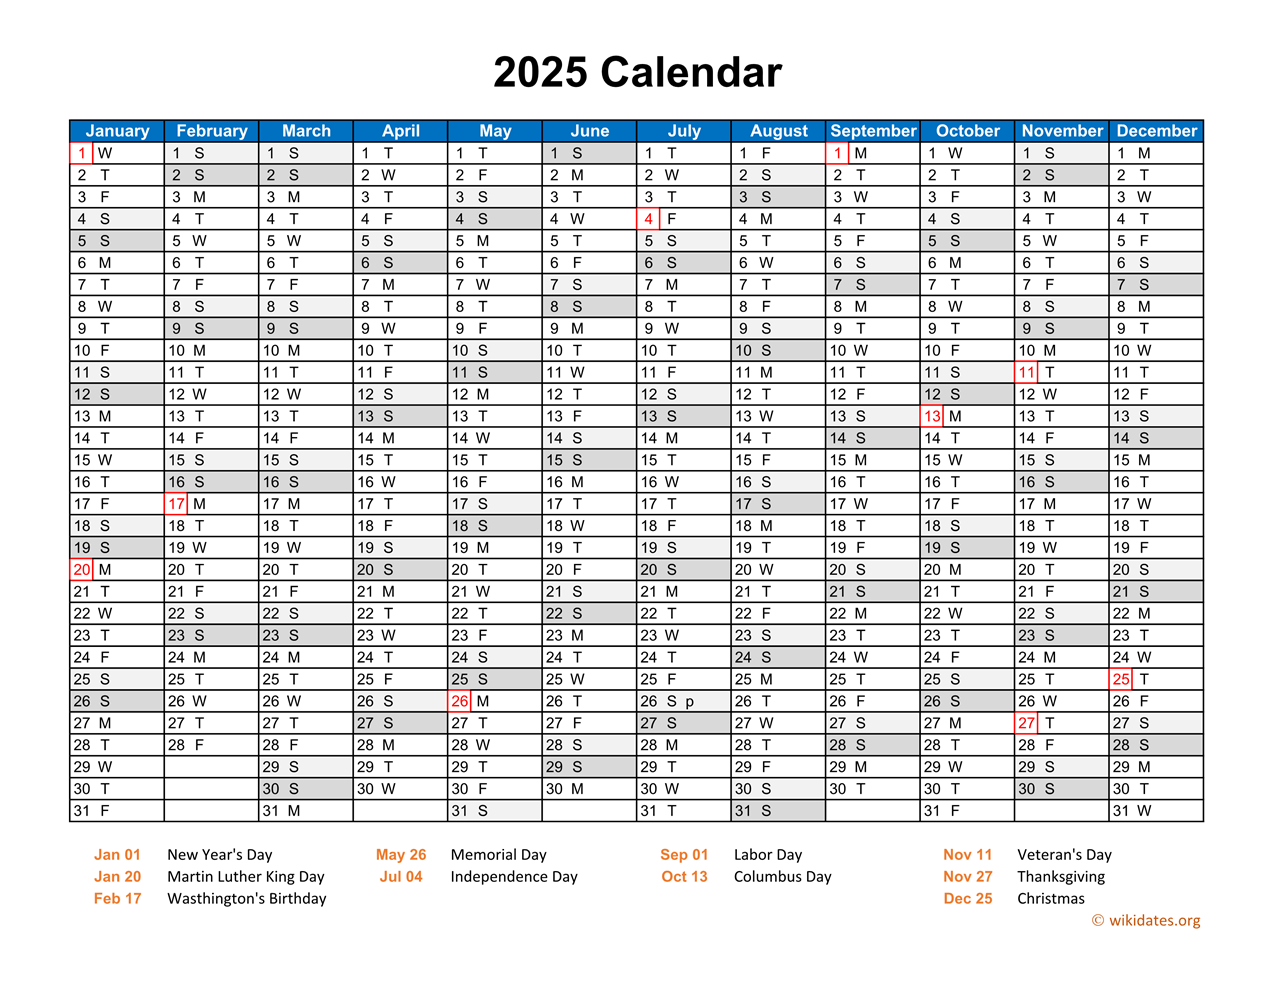 2025-calendar-in-pdf-wikidates